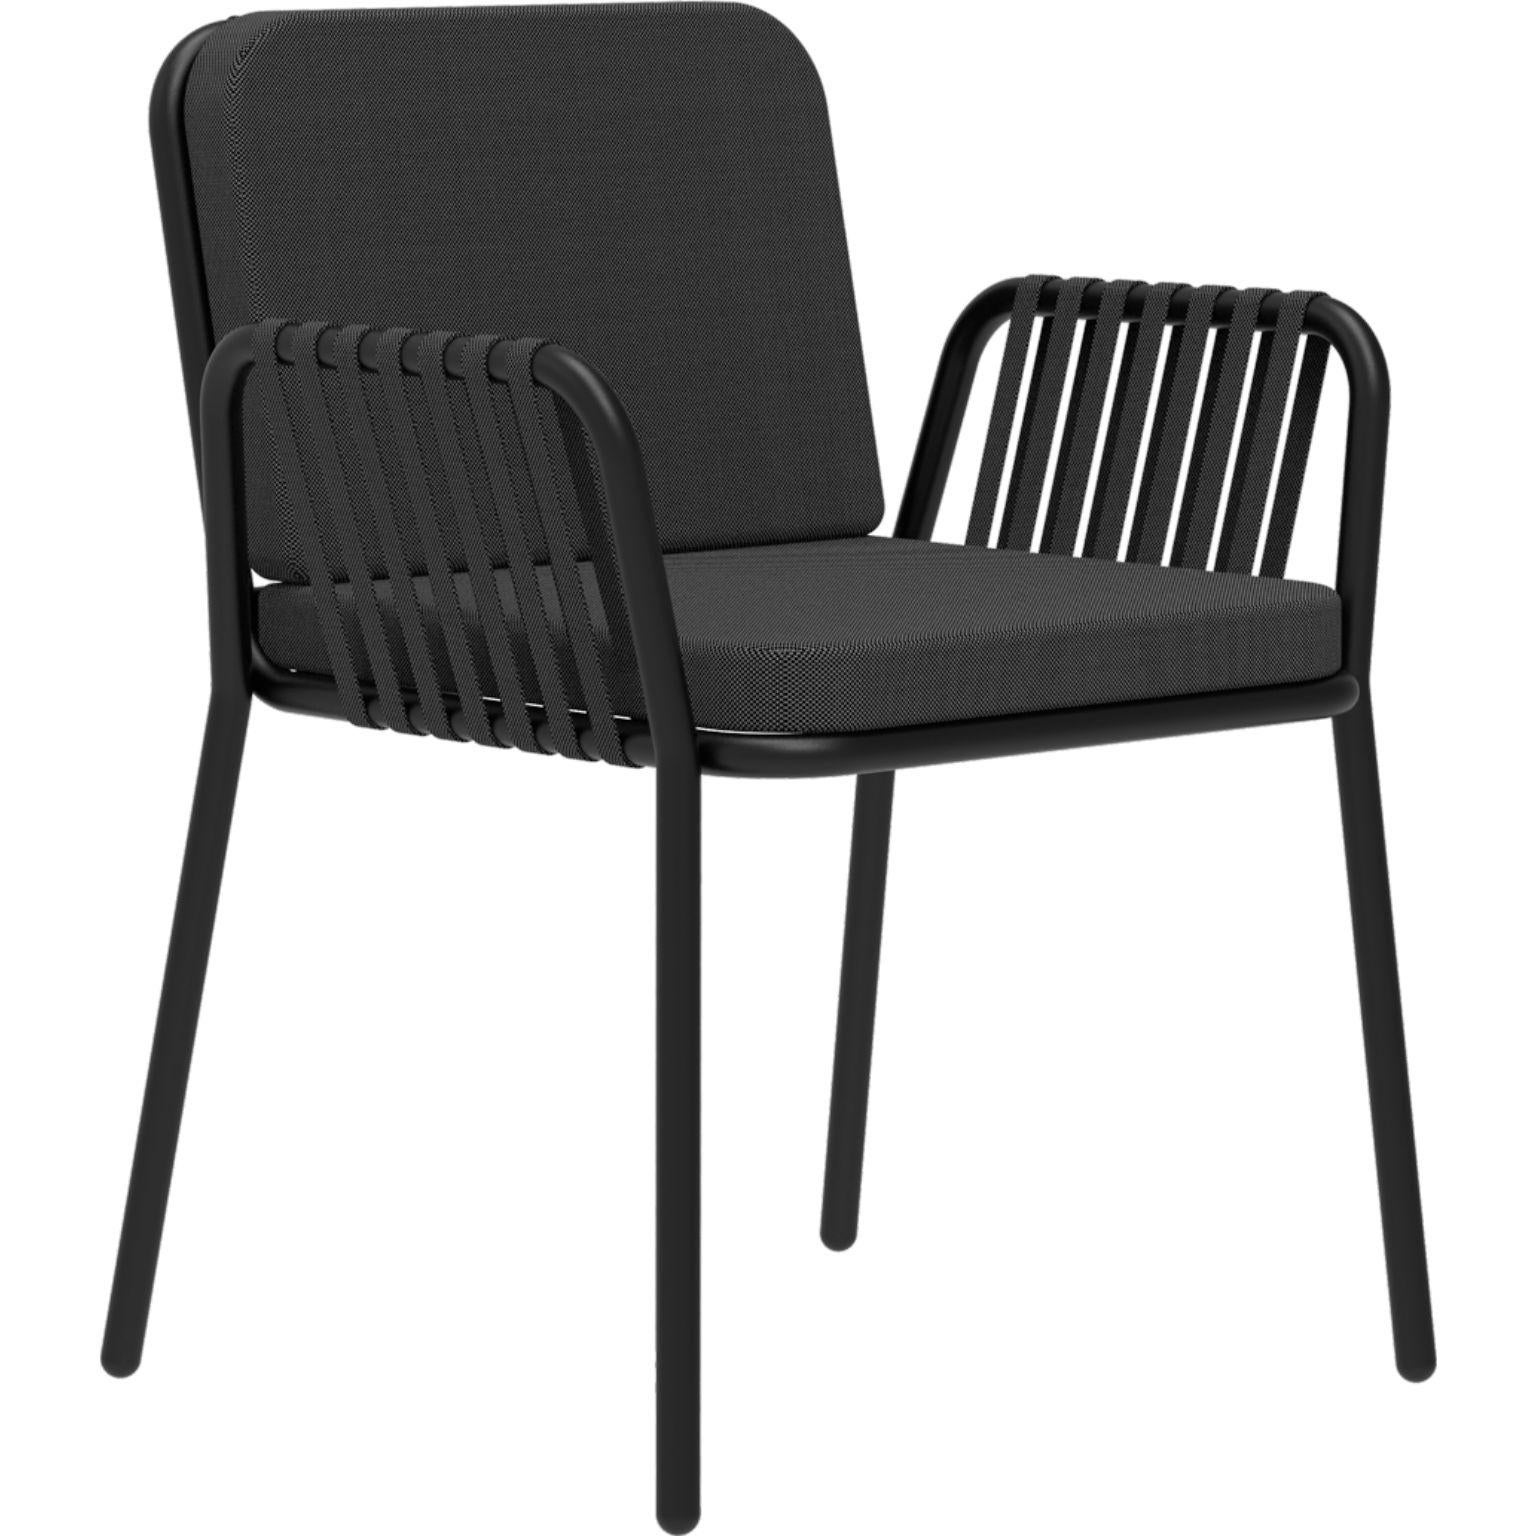 Schwarzer Sessel mit Bändern von MOWEE
Abmessungen: T60 x B62 x H83 cm (Sitzhöhe 48).
MATERIAL: Aluminium und Polstermaterial.
Gewicht: 5 kg.
Auch in verschiedenen Farben und Ausführungen erhältlich.

Eine Collection'S, die durch ihre Schönheit und